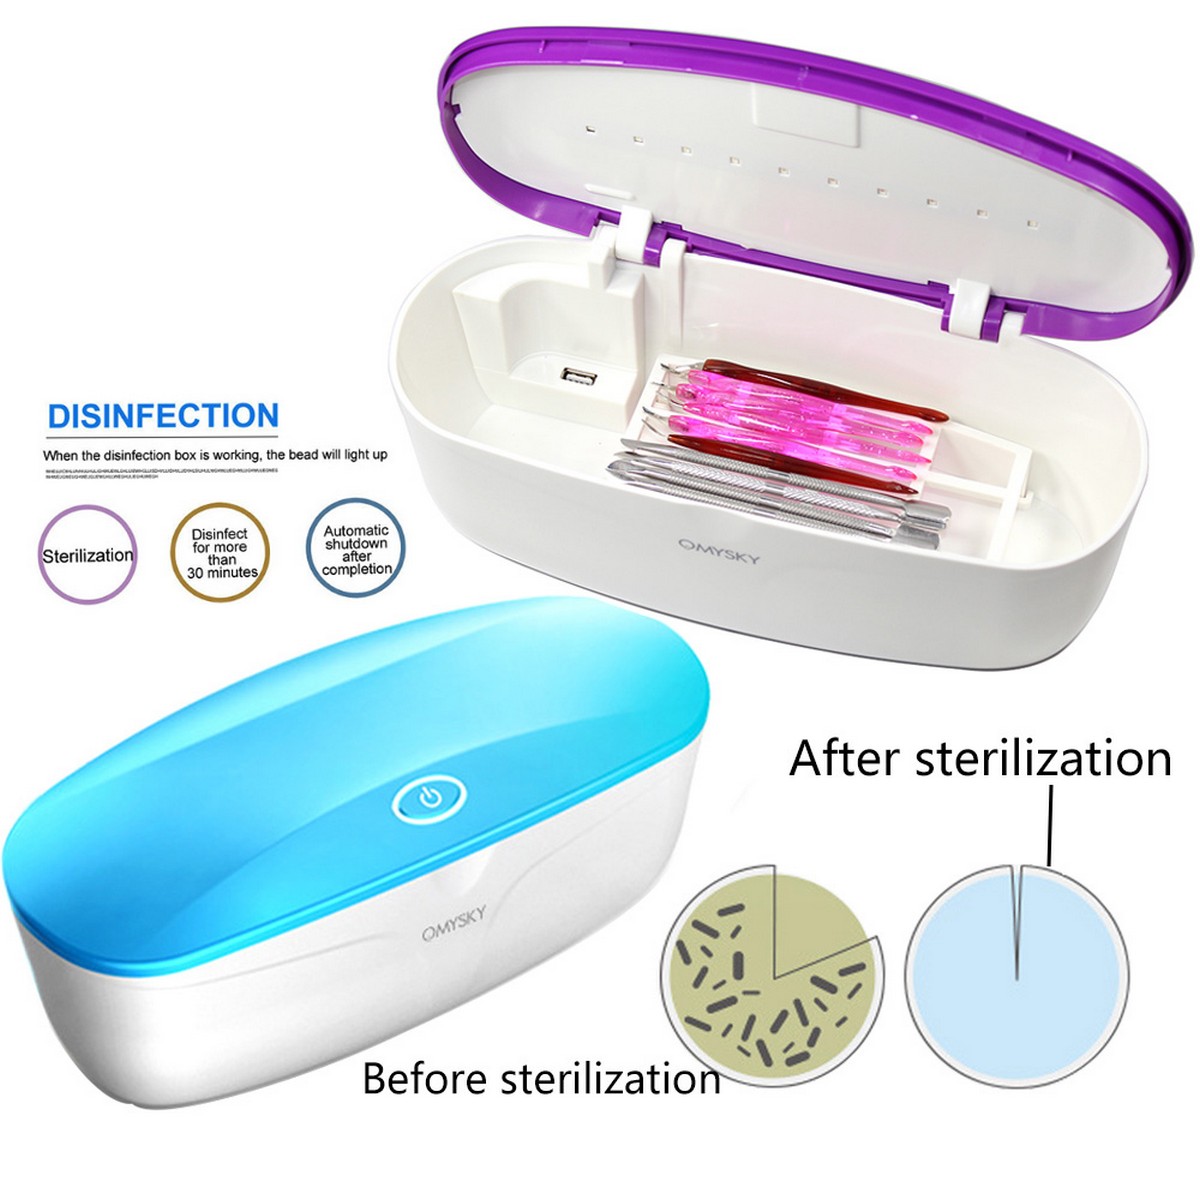 Sterilisationsbox zur Desinfektion